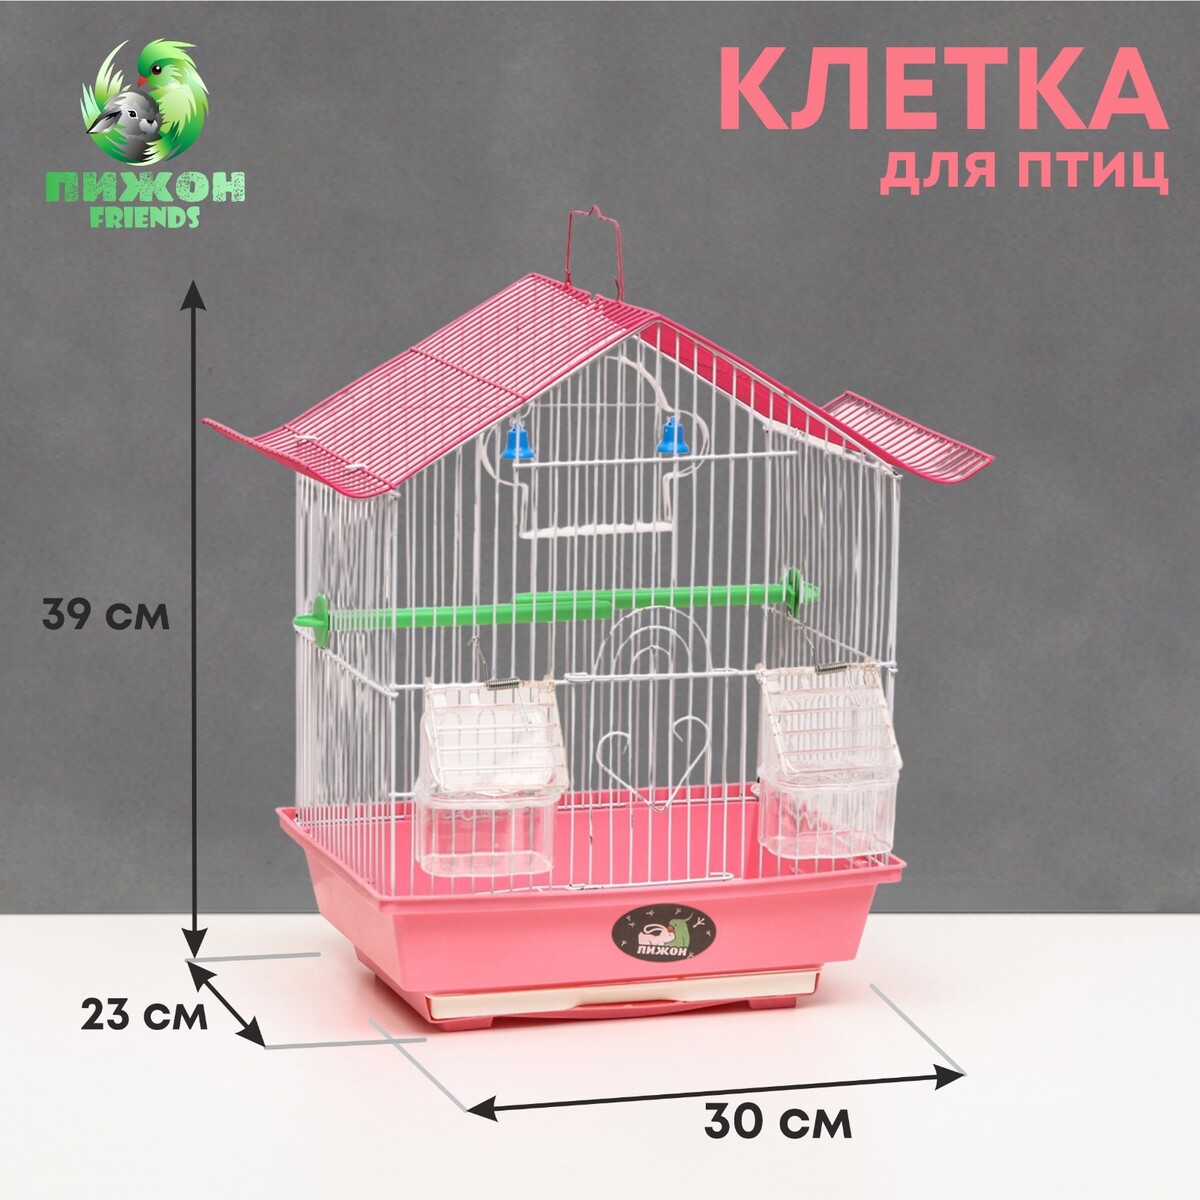 Клетка для птиц укомплектованная bd-1/1d, 30 х 23 х 39 см, розовая клетка для птиц двойная крыша укомплектованная 34 х 27 х 47 см красная